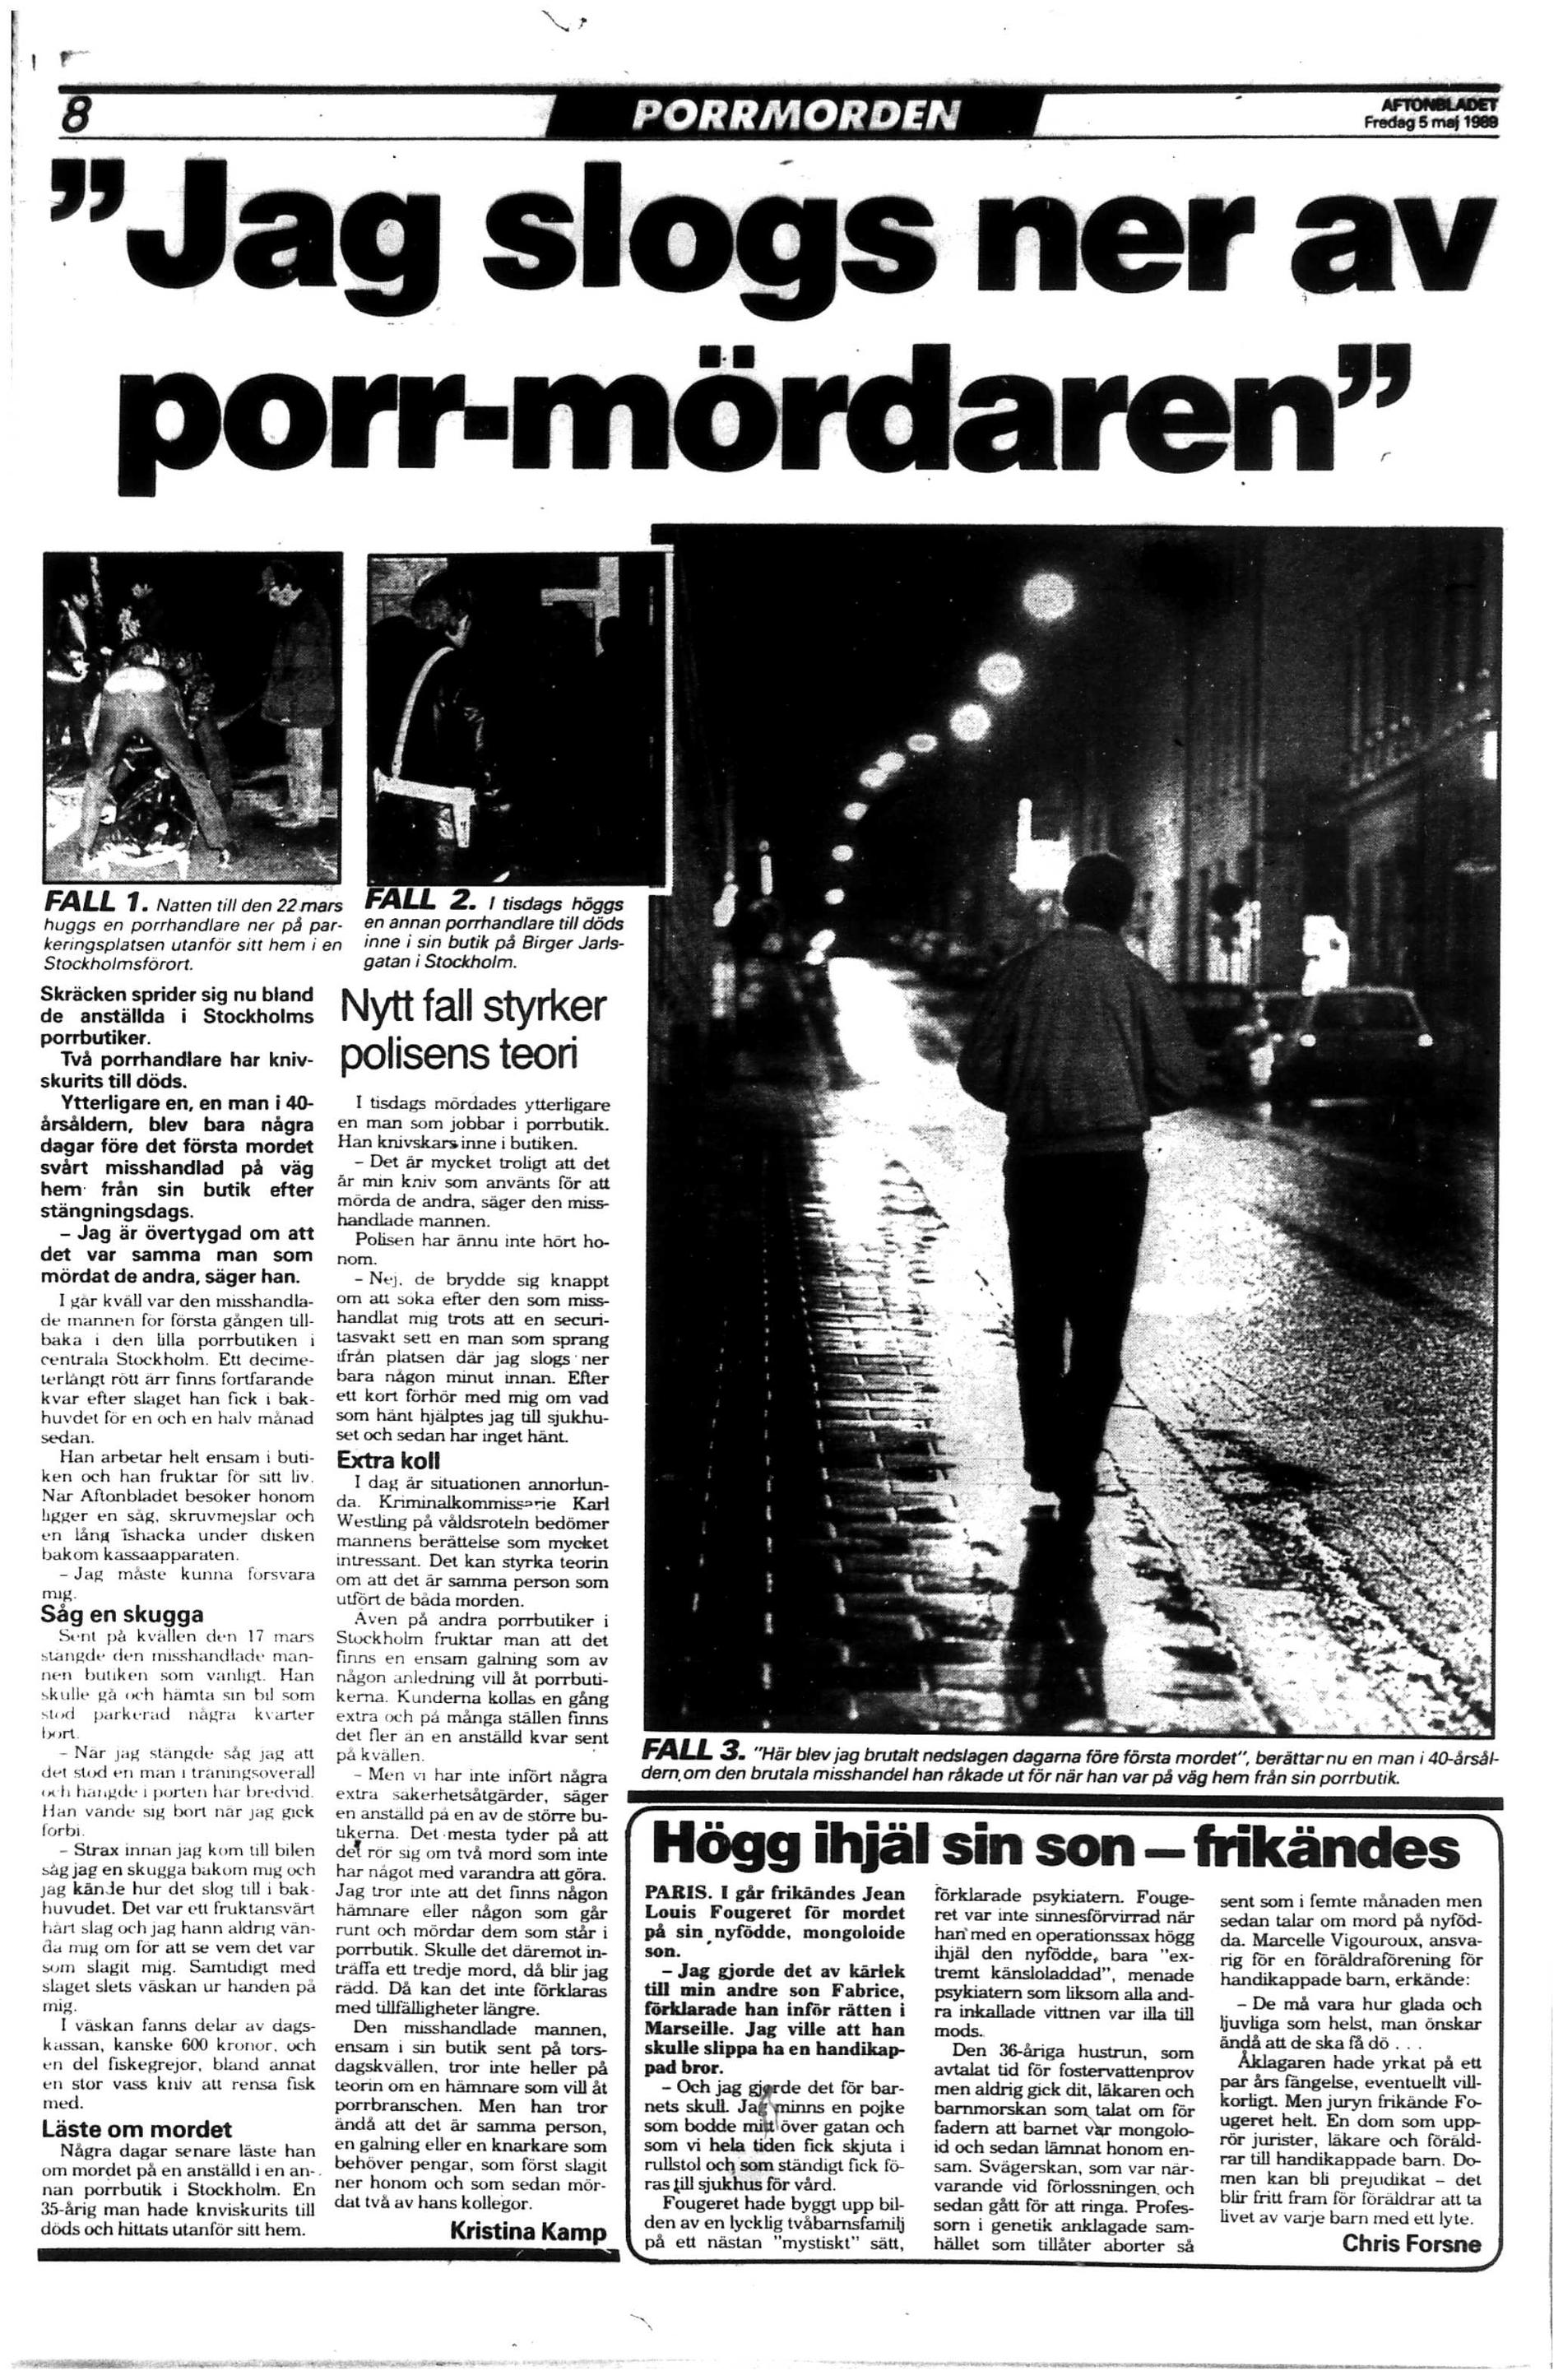 Dåden spred skräck bland människorna som arbetade i Stockholms porrvärld. 